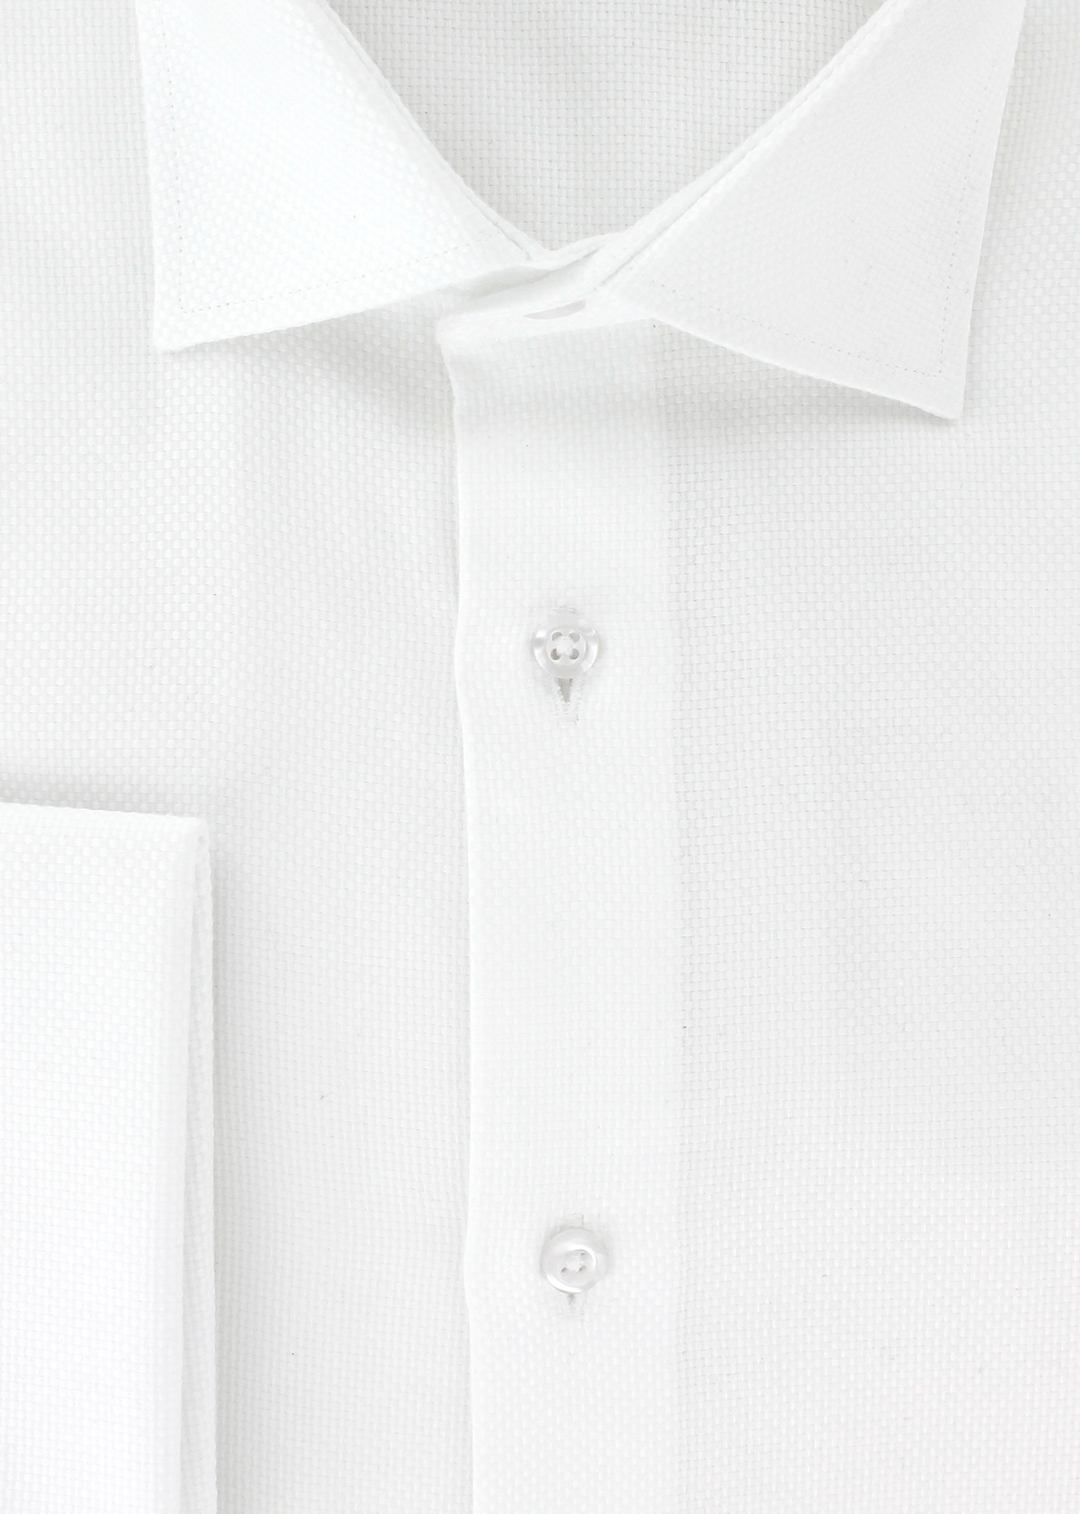 Chemise cintrée natté blanc à poignets mousquetaires | Cotton Park